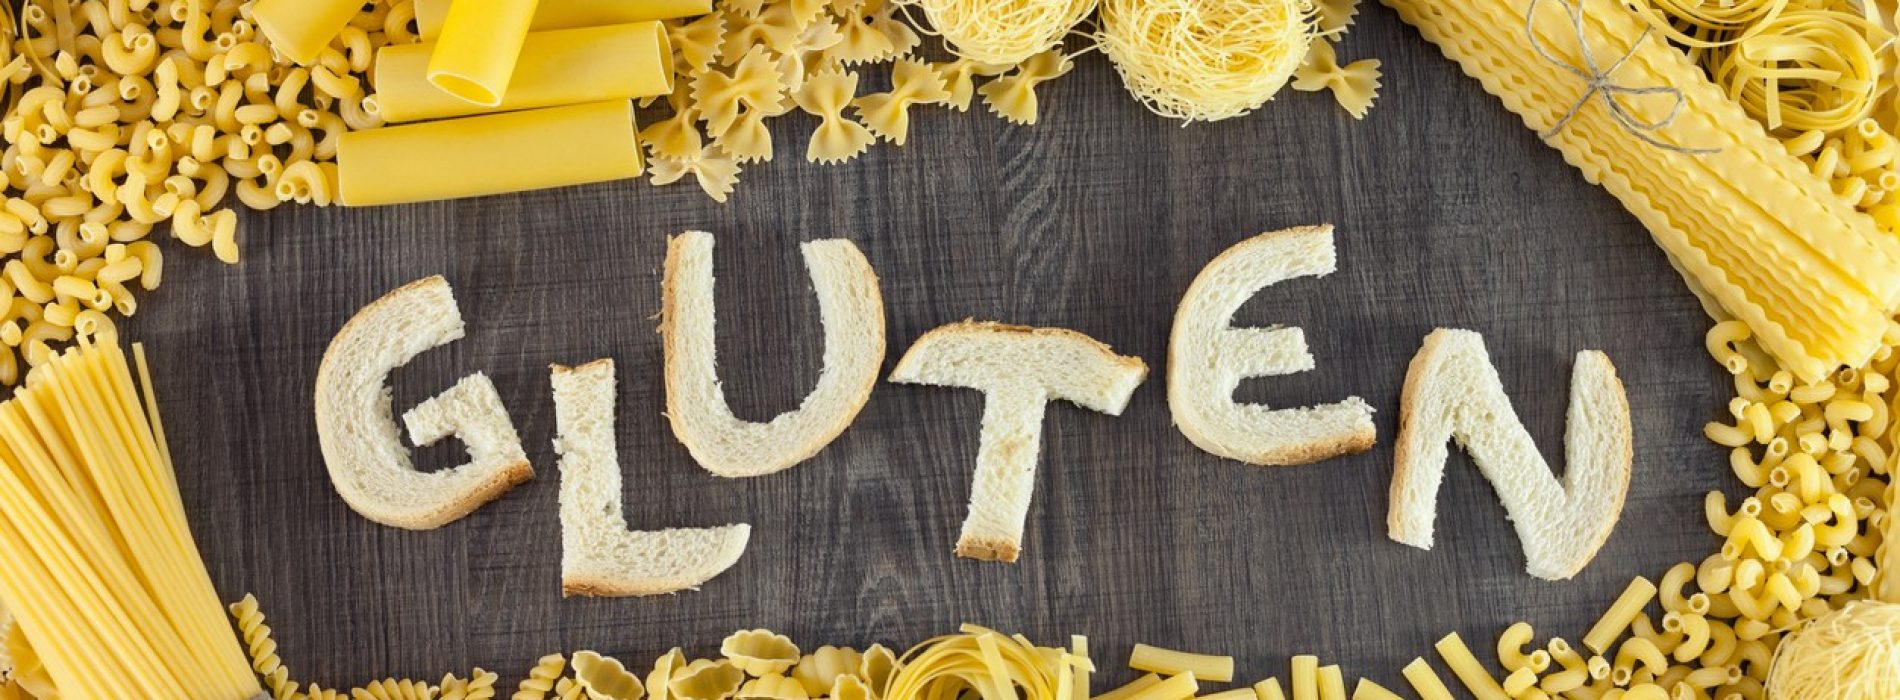 Pas op met glutenvrij eten: het is echt ongezond